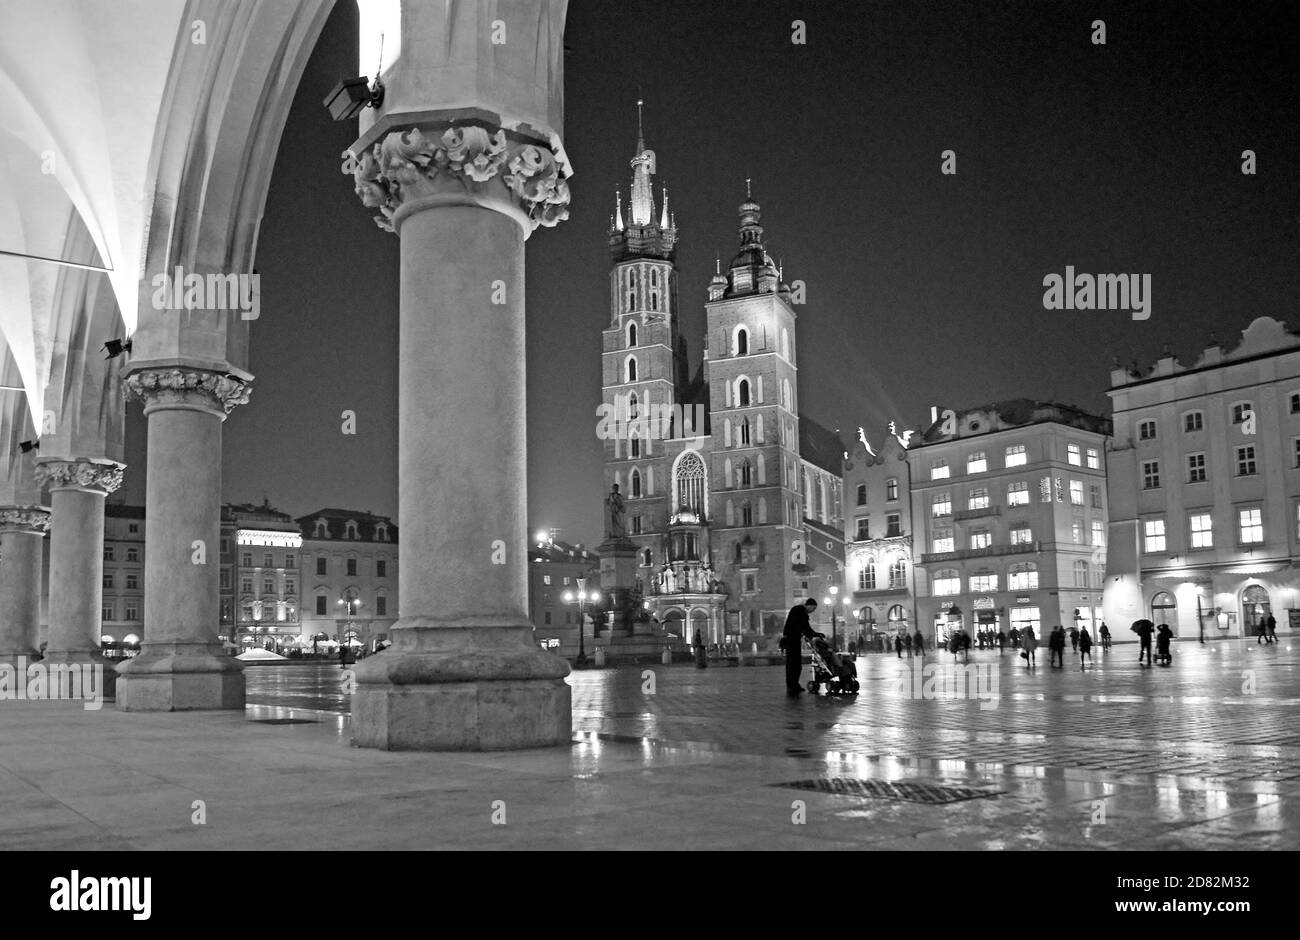 Dalla sala dei tessuti, una notte piovosa nella piazza principale del XIII secolo a Cracovia, in Polonia si possono ammirare le torri gotiche della Basilica di Santa Maria. Foto Stock